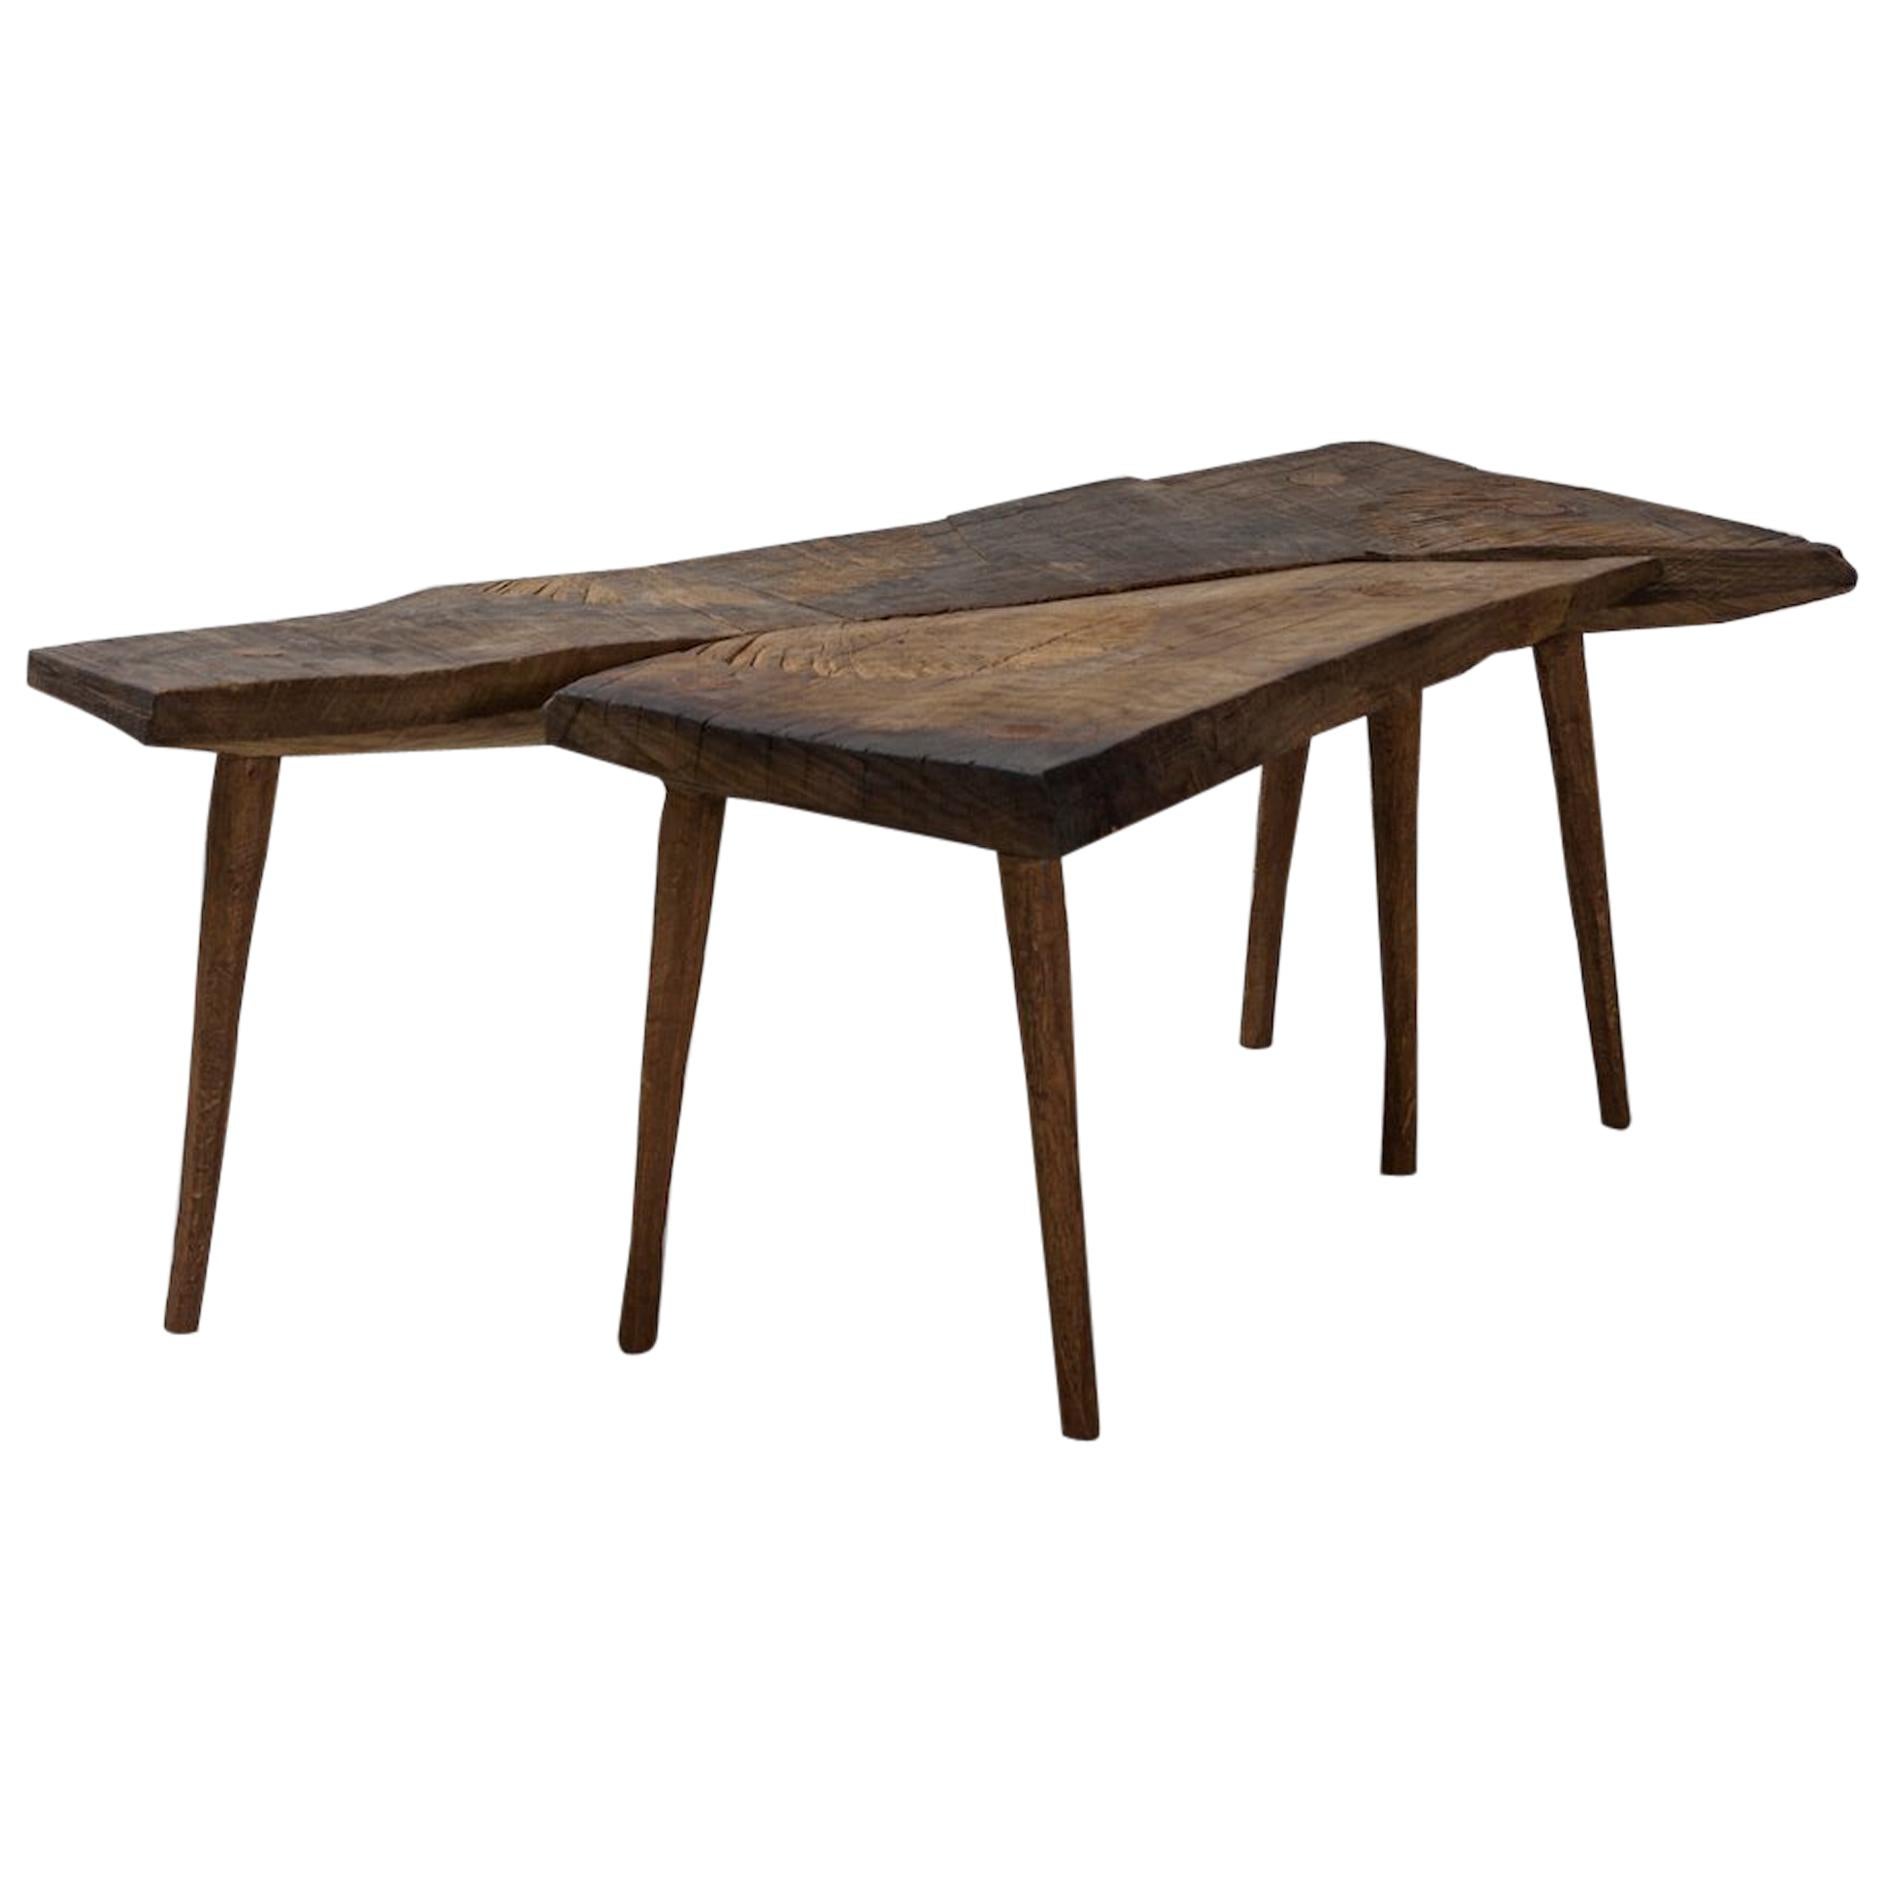 Petite table n°2 contemporaine de style brutaliste en chêne massif et huile de lin